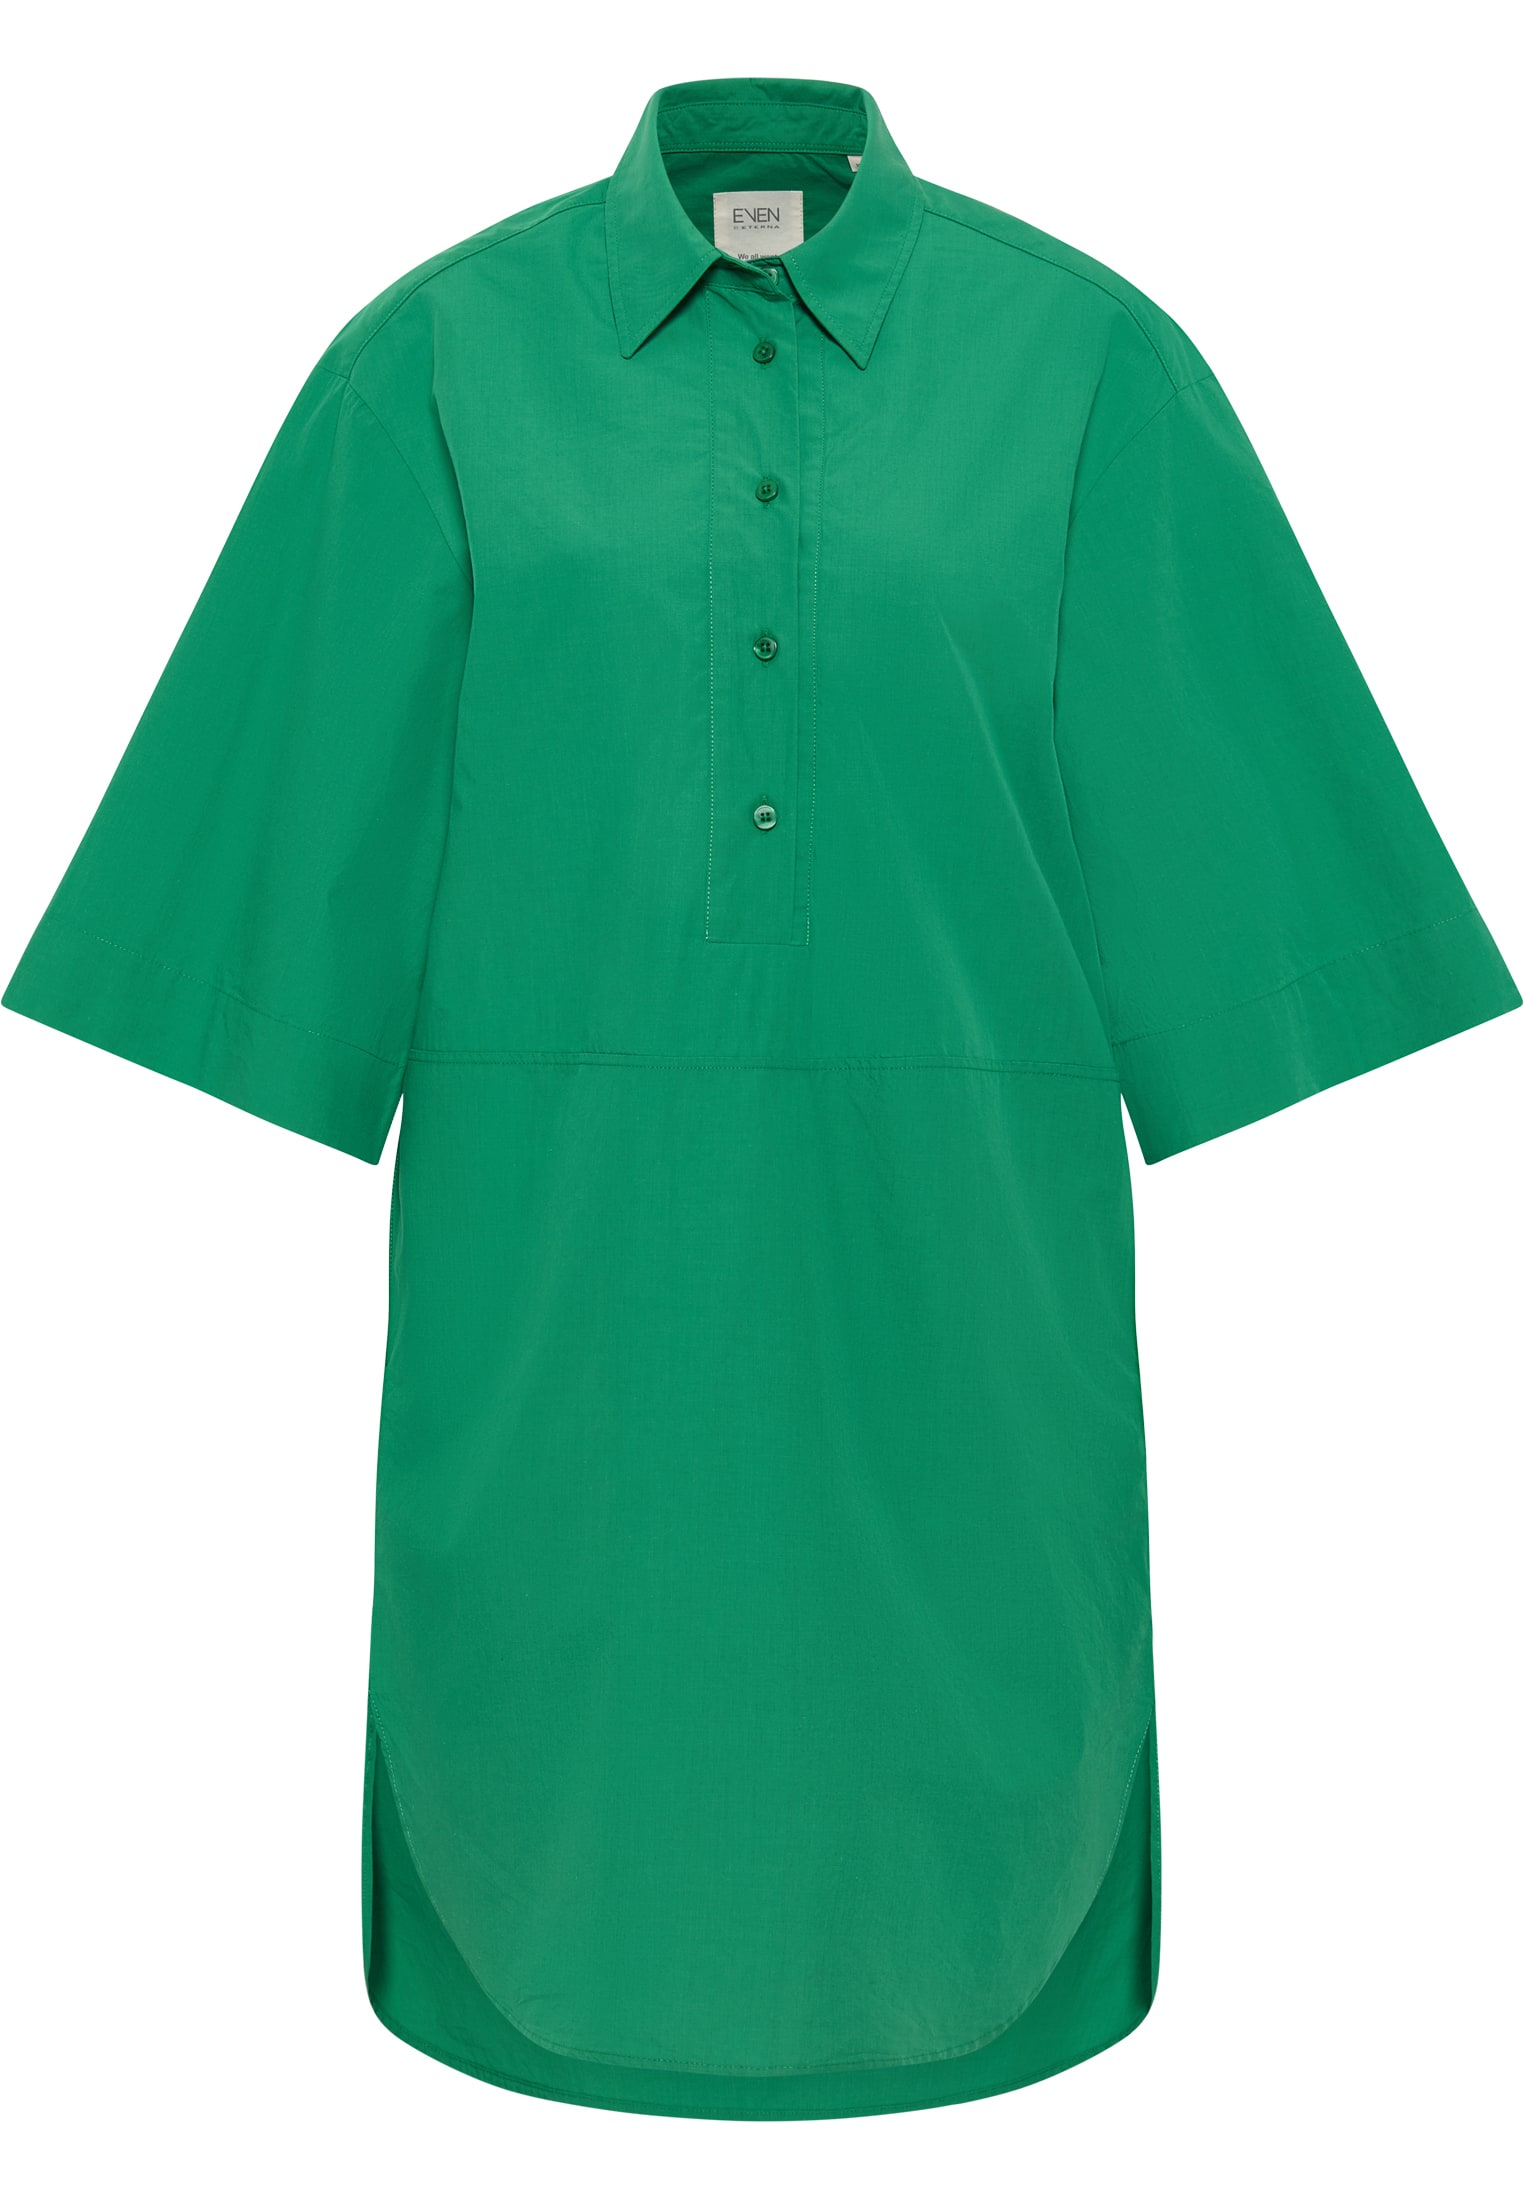 Shirt dress in green plain